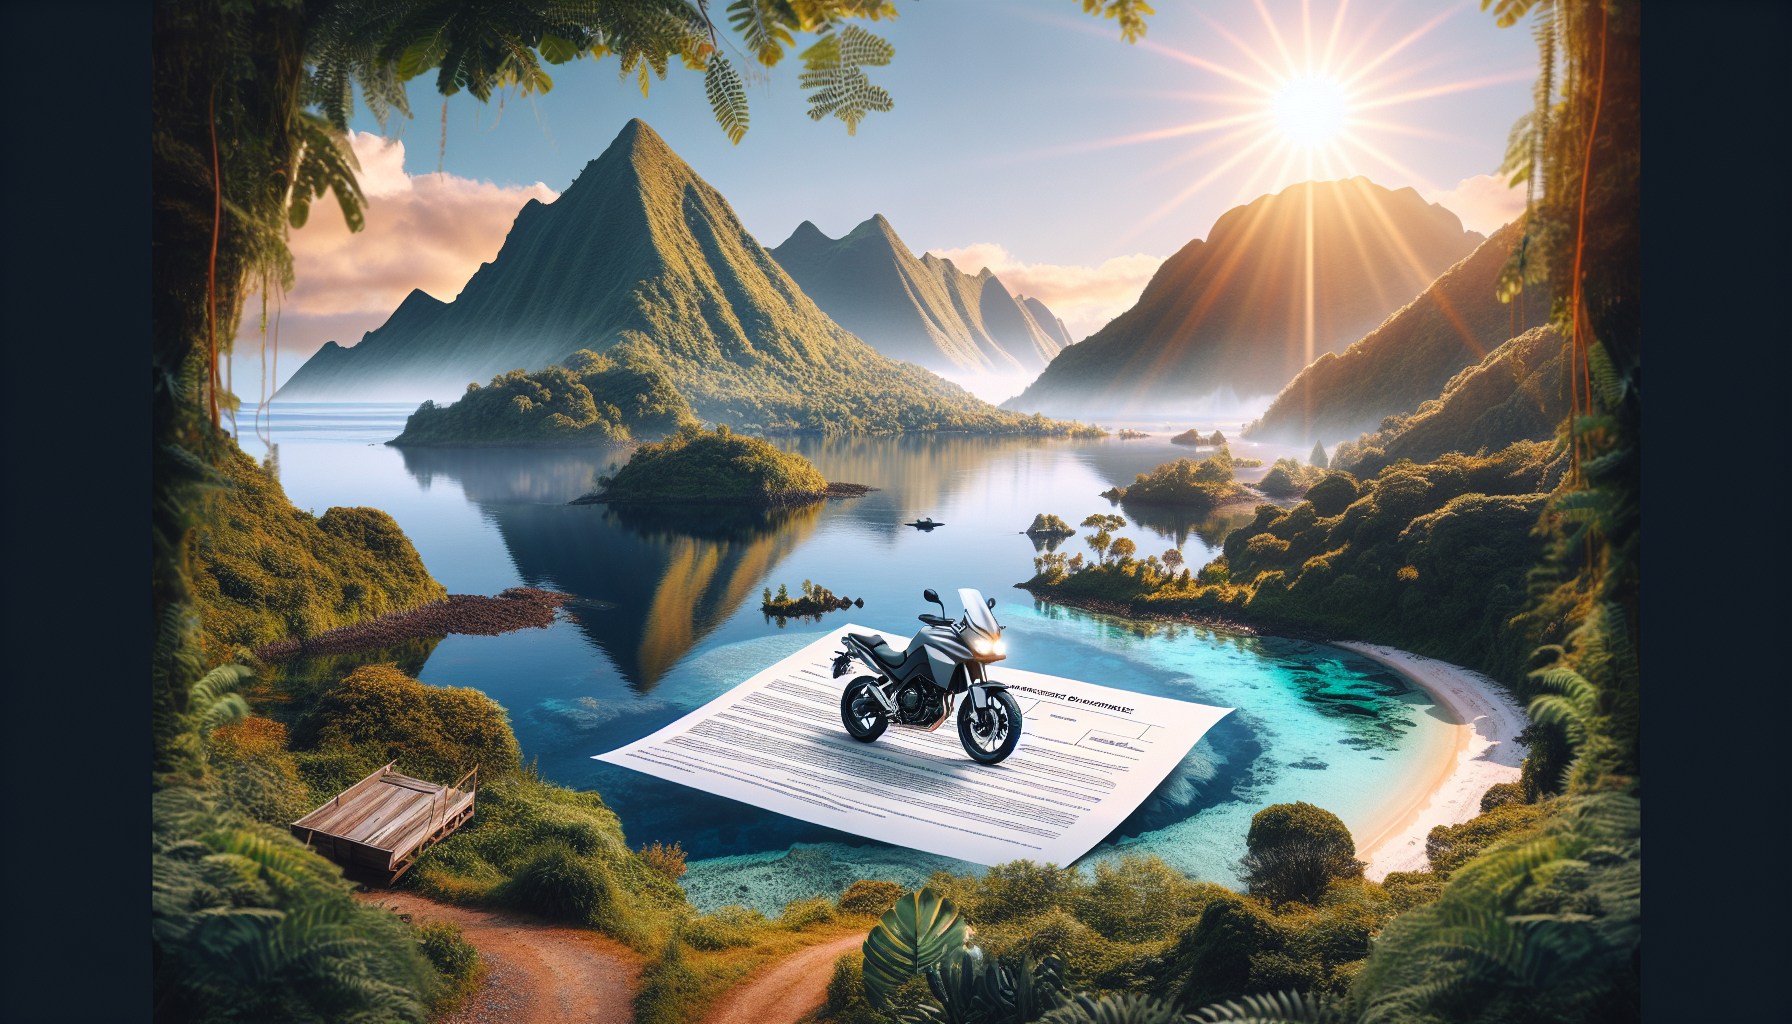 découvrez les nombreux avantages d'une assurance moto à la réunion avec des garanties adaptées à vos besoins. trouvez la meilleure assurance moto 974 pour rouler en toute sérénité sur l'île.